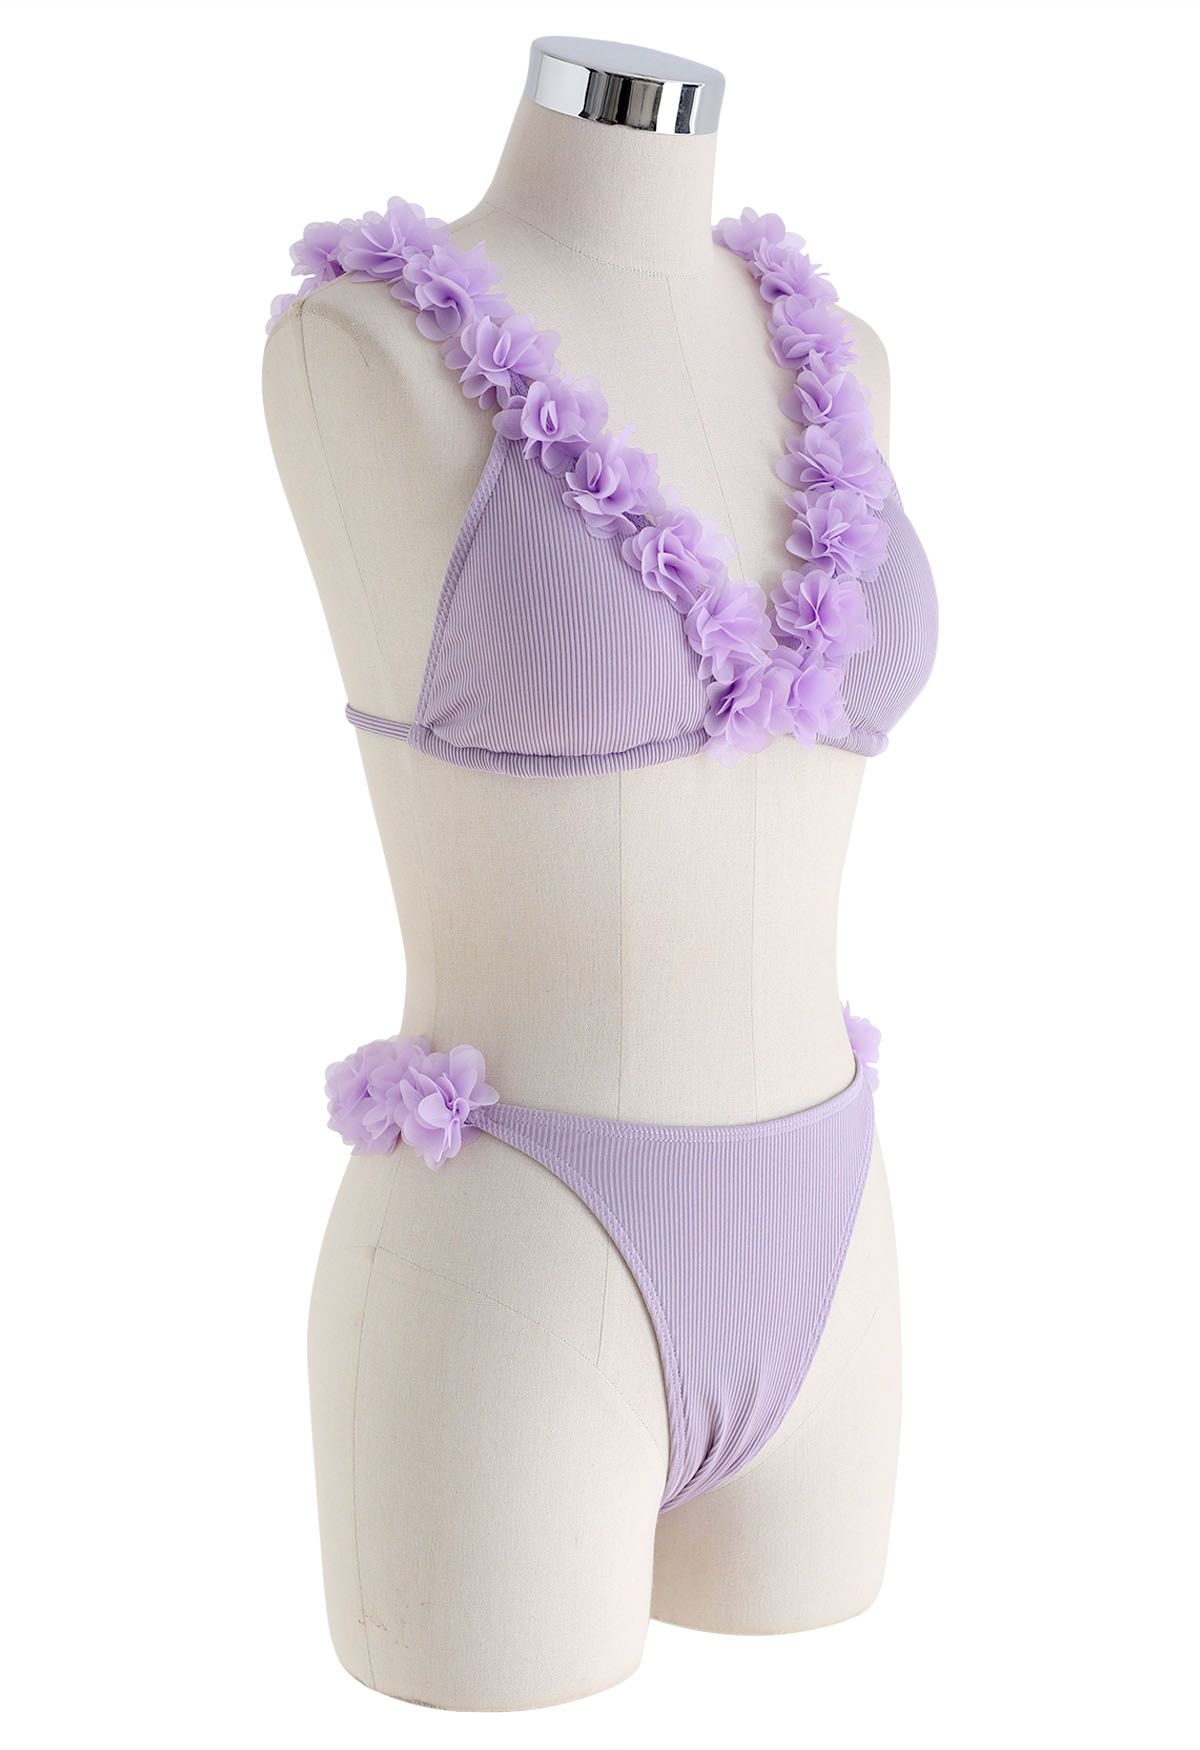 Bikini-Set mit tiefem V-Ausschnitt und Blumenmuster aus 3D-Mesh in Flieder